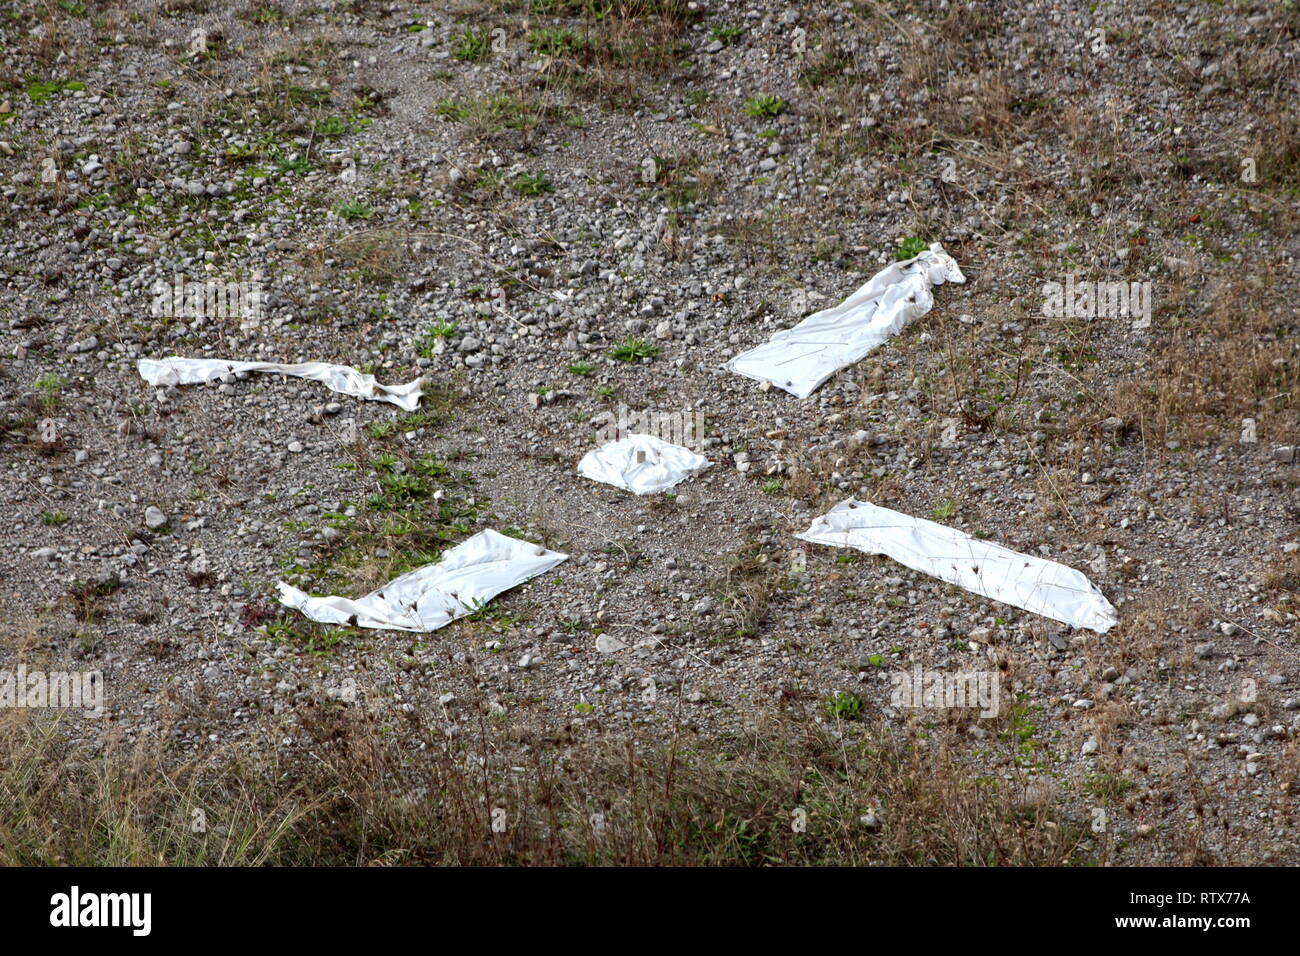 X segna il punto improvvisato punto di atterraggio per mostrare i paracadutisti realizzato con nylon bianco sulla ghiaia circondata con erba secca sulla calda giornata di sole Foto Stock